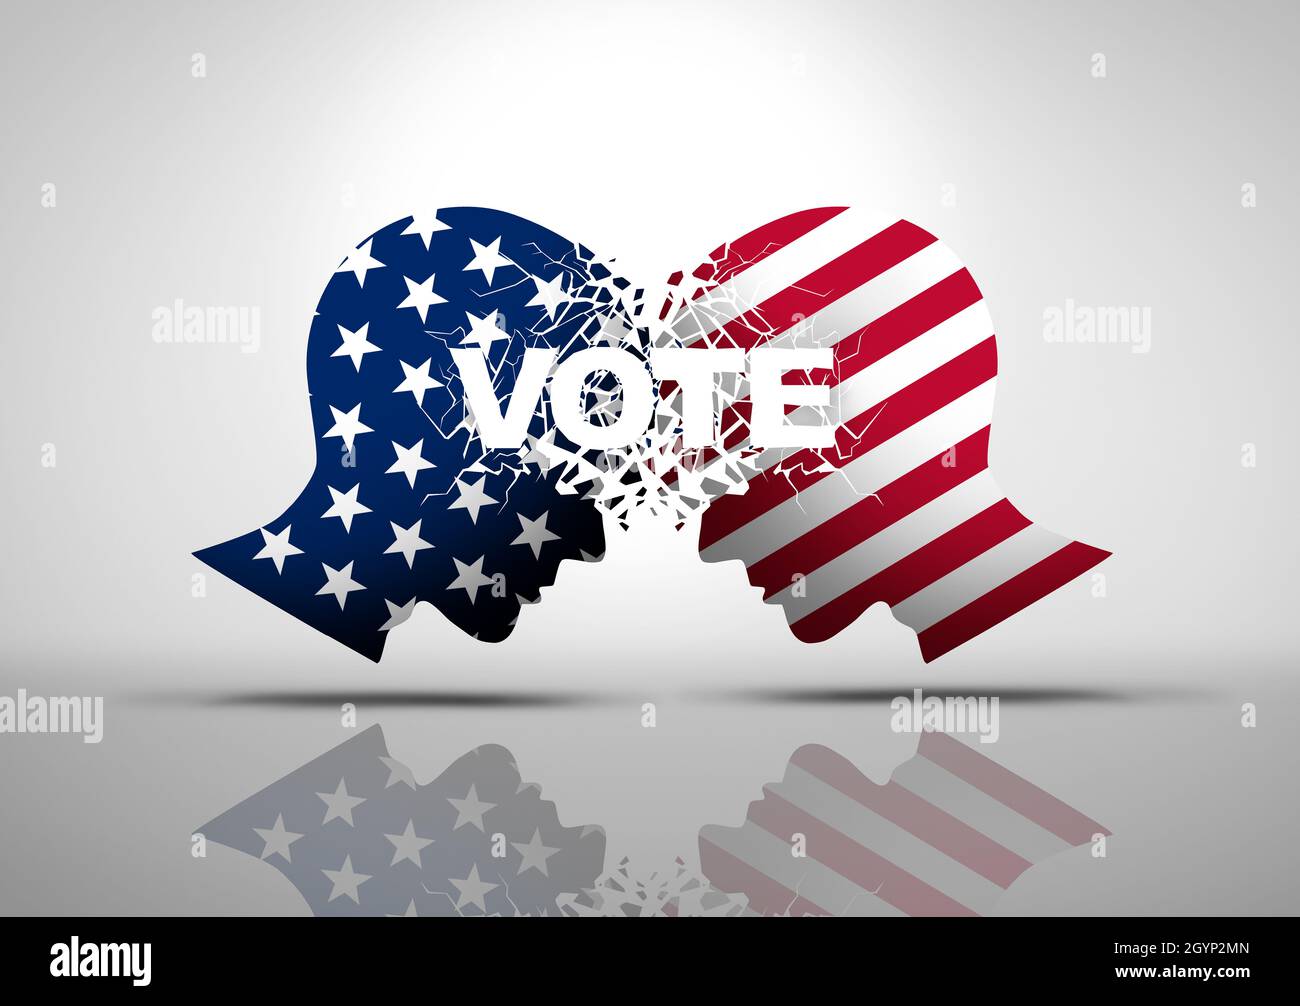 La política electoral de Estados Unidos y los EE.UU. Votan el debate o la guerra electoral política como un conflicto cultural estadounidense con dos bandos opuestos como conservadores. Foto de stock